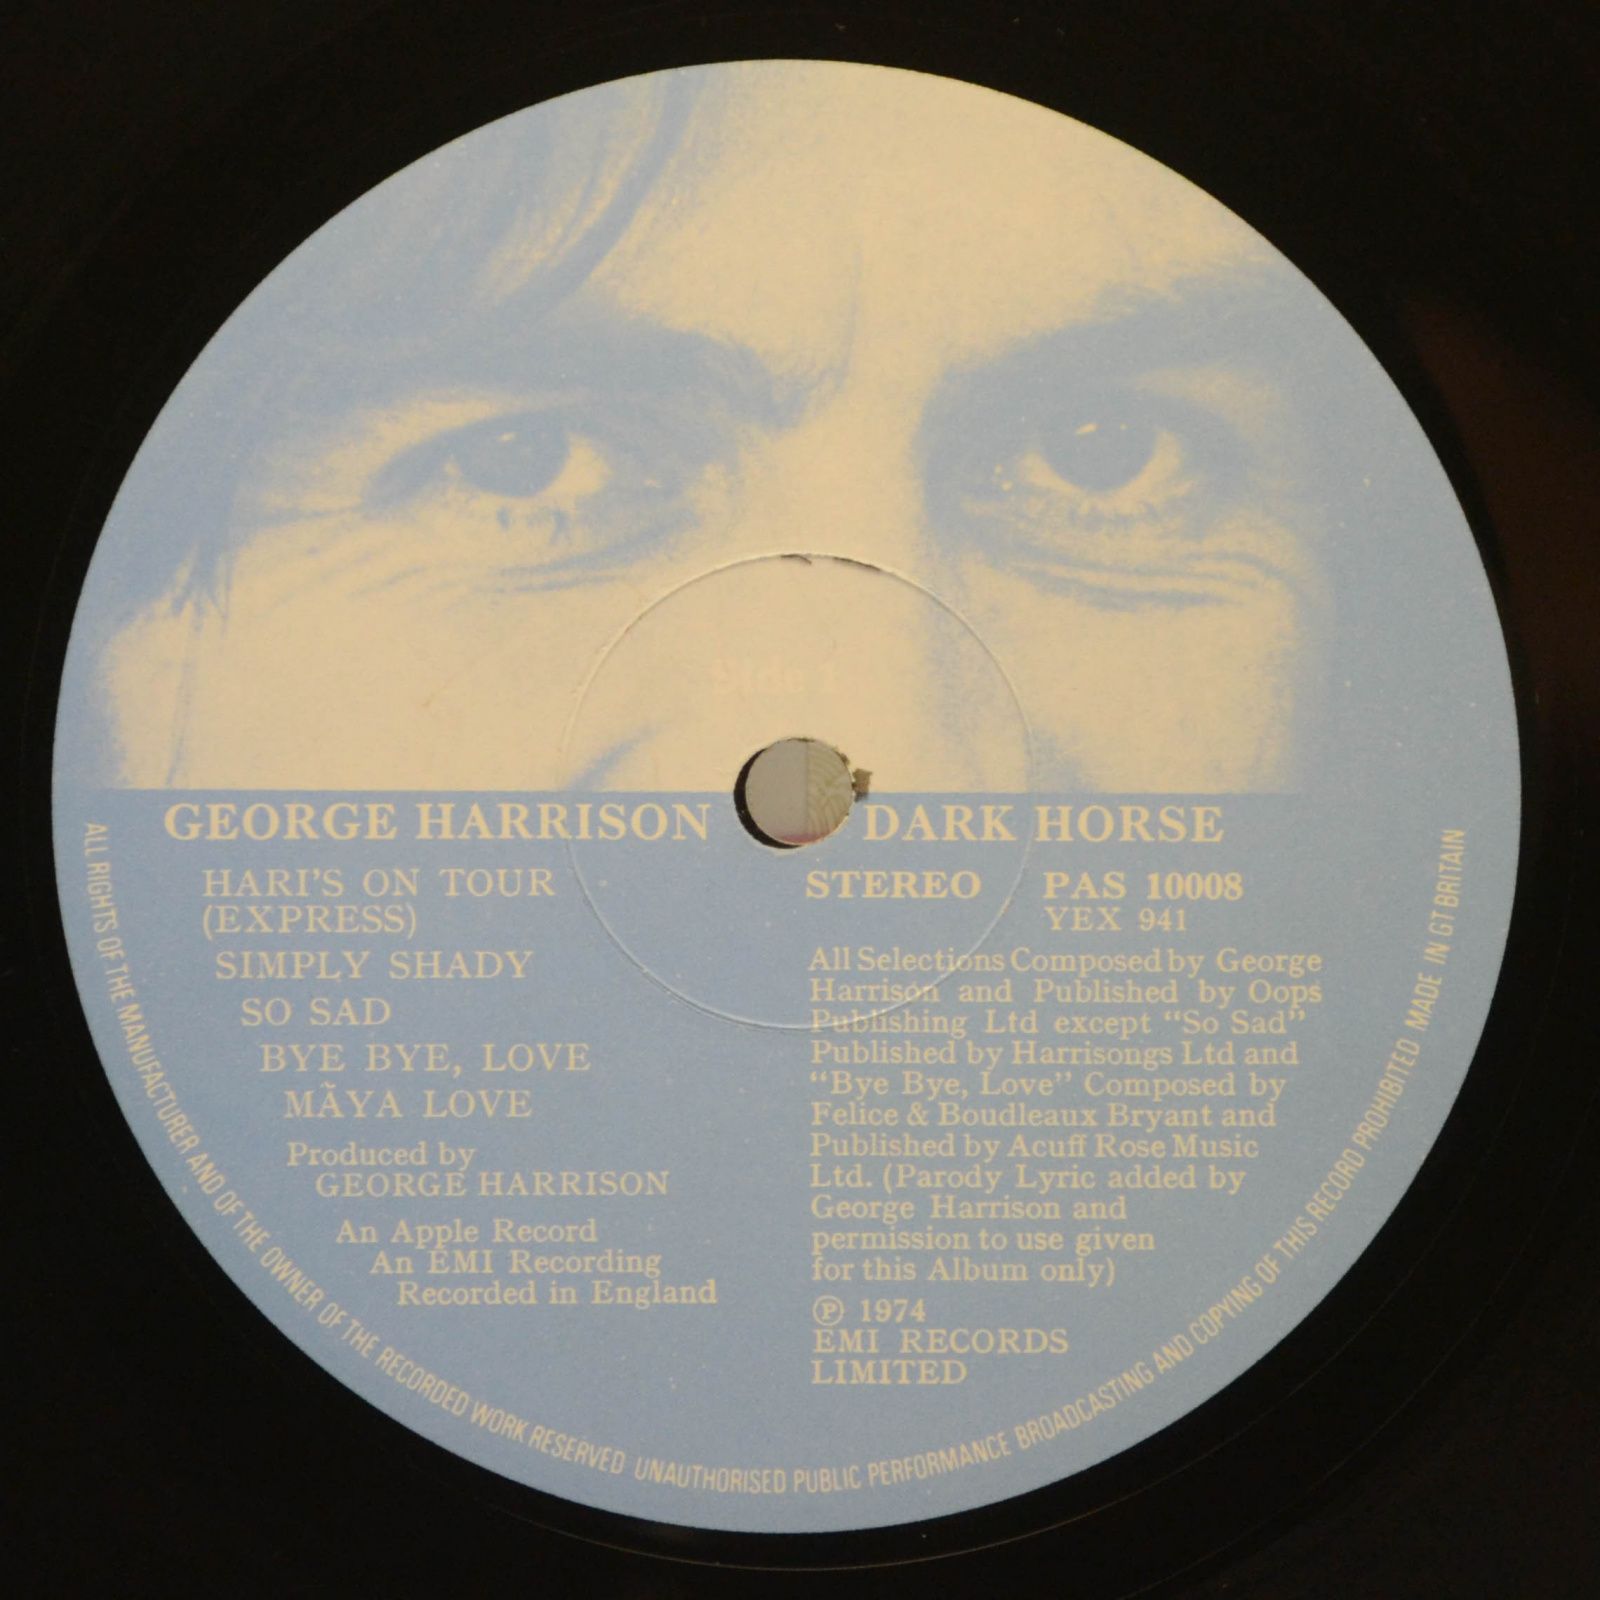 George Harrison — Dark Horse, 1974